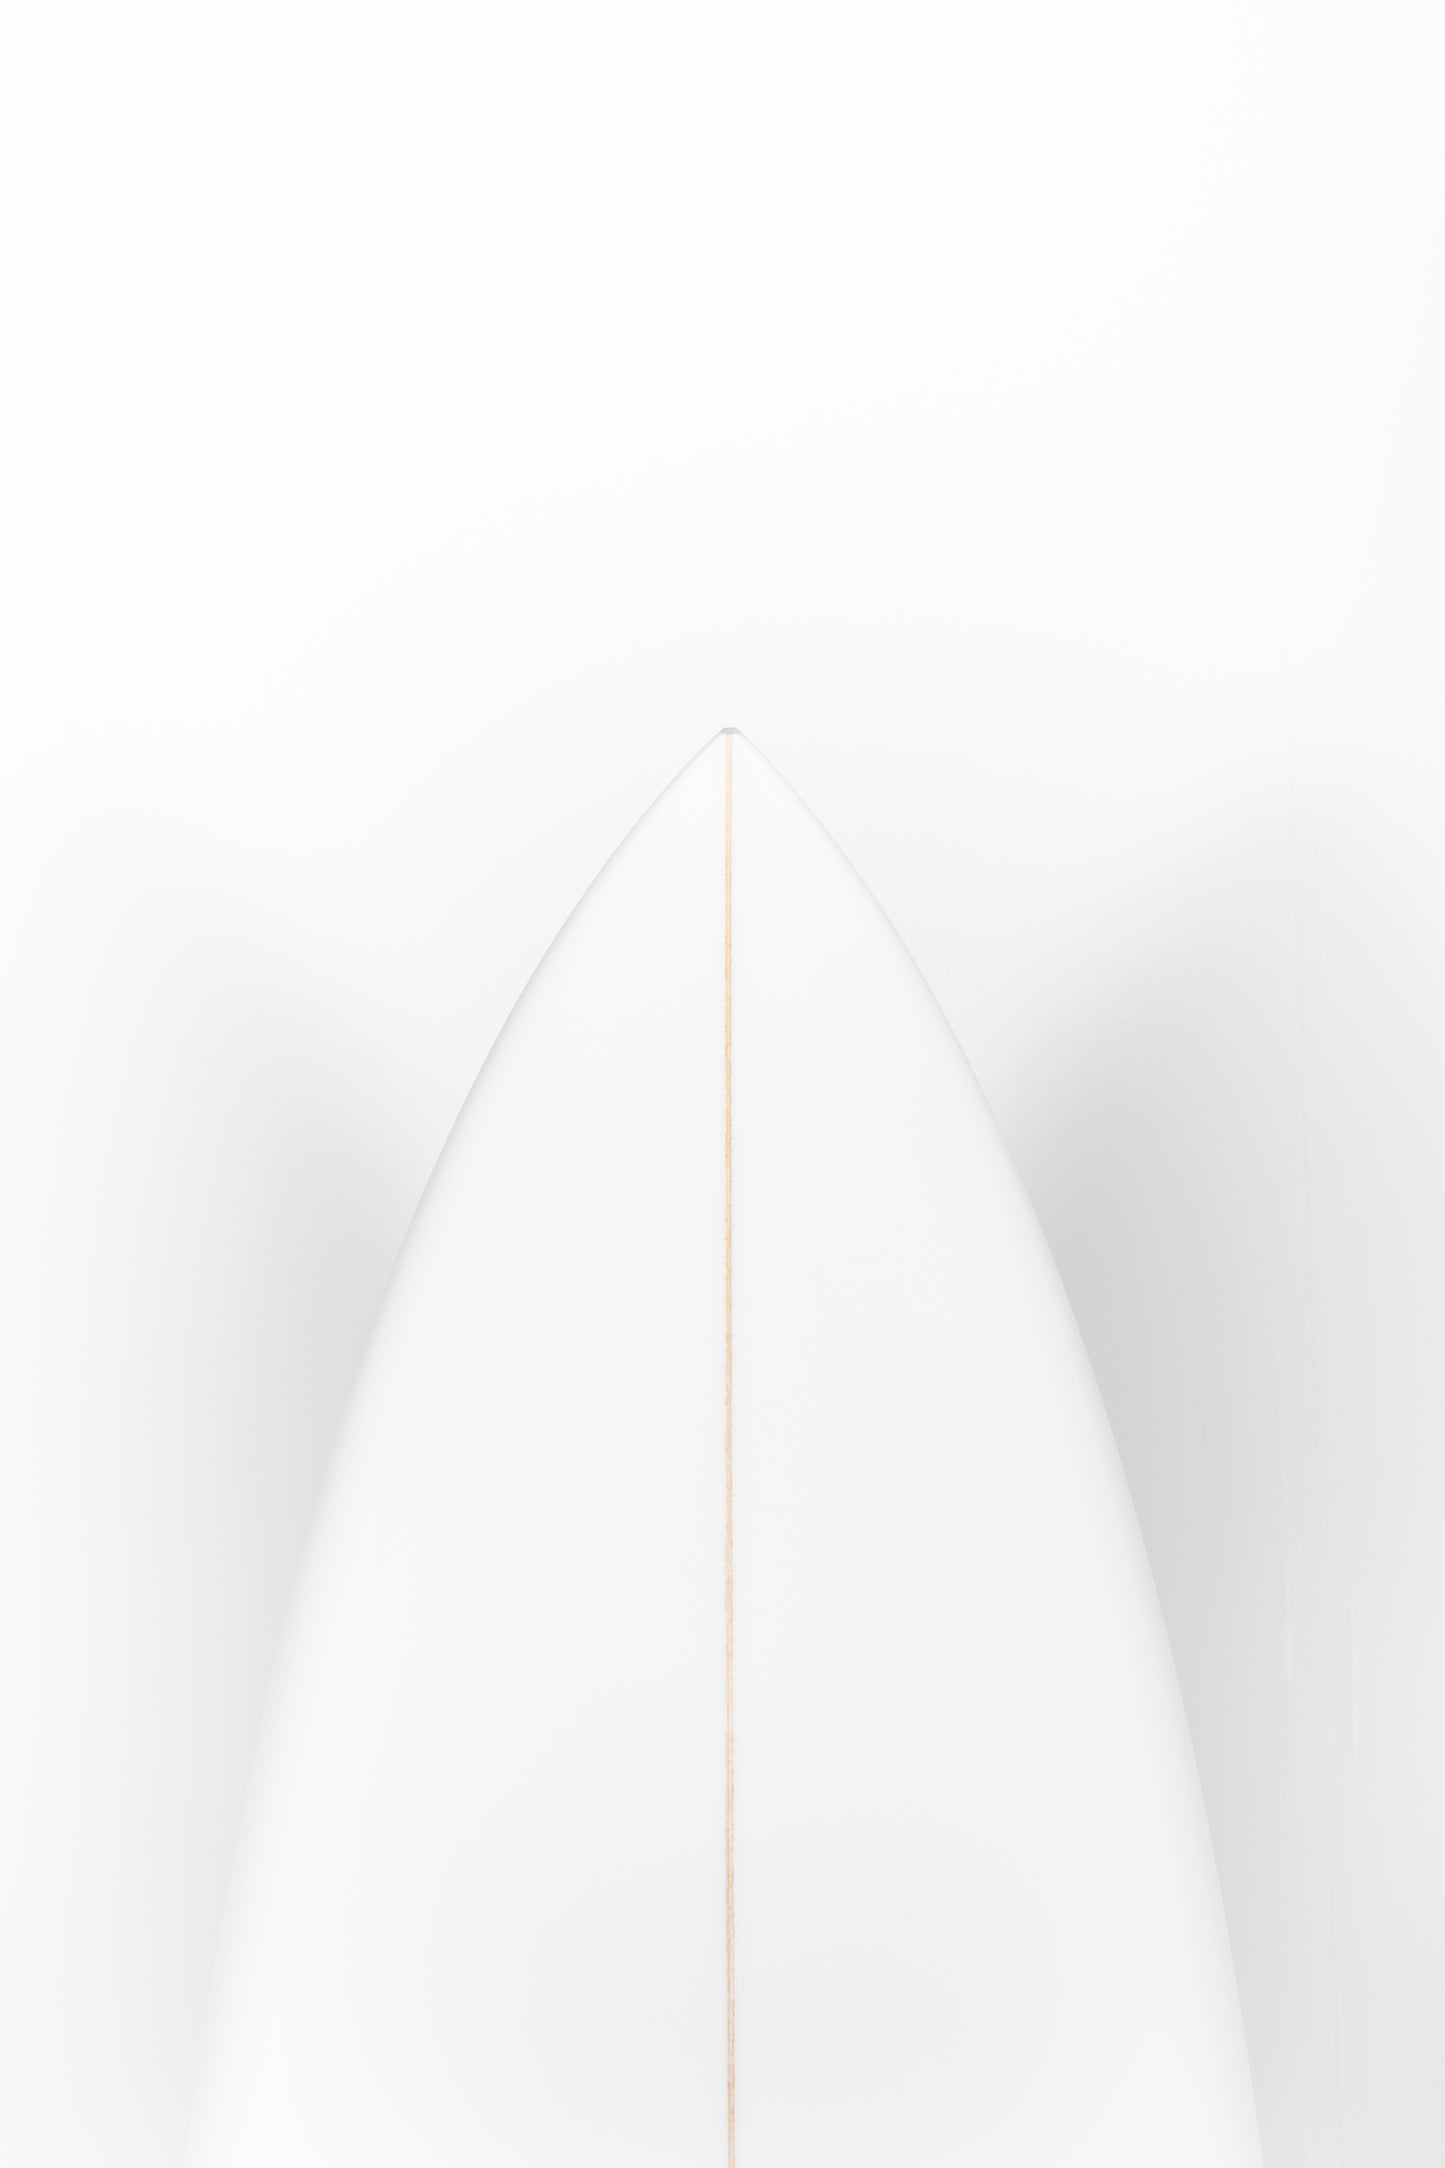 
                  
                    Pukas Surf Shop - Lost Surfboard - SABO TAJ by Matt Biolos - 5’11” x 19,38 x 2,5 x 31L - MH12529
                  
                